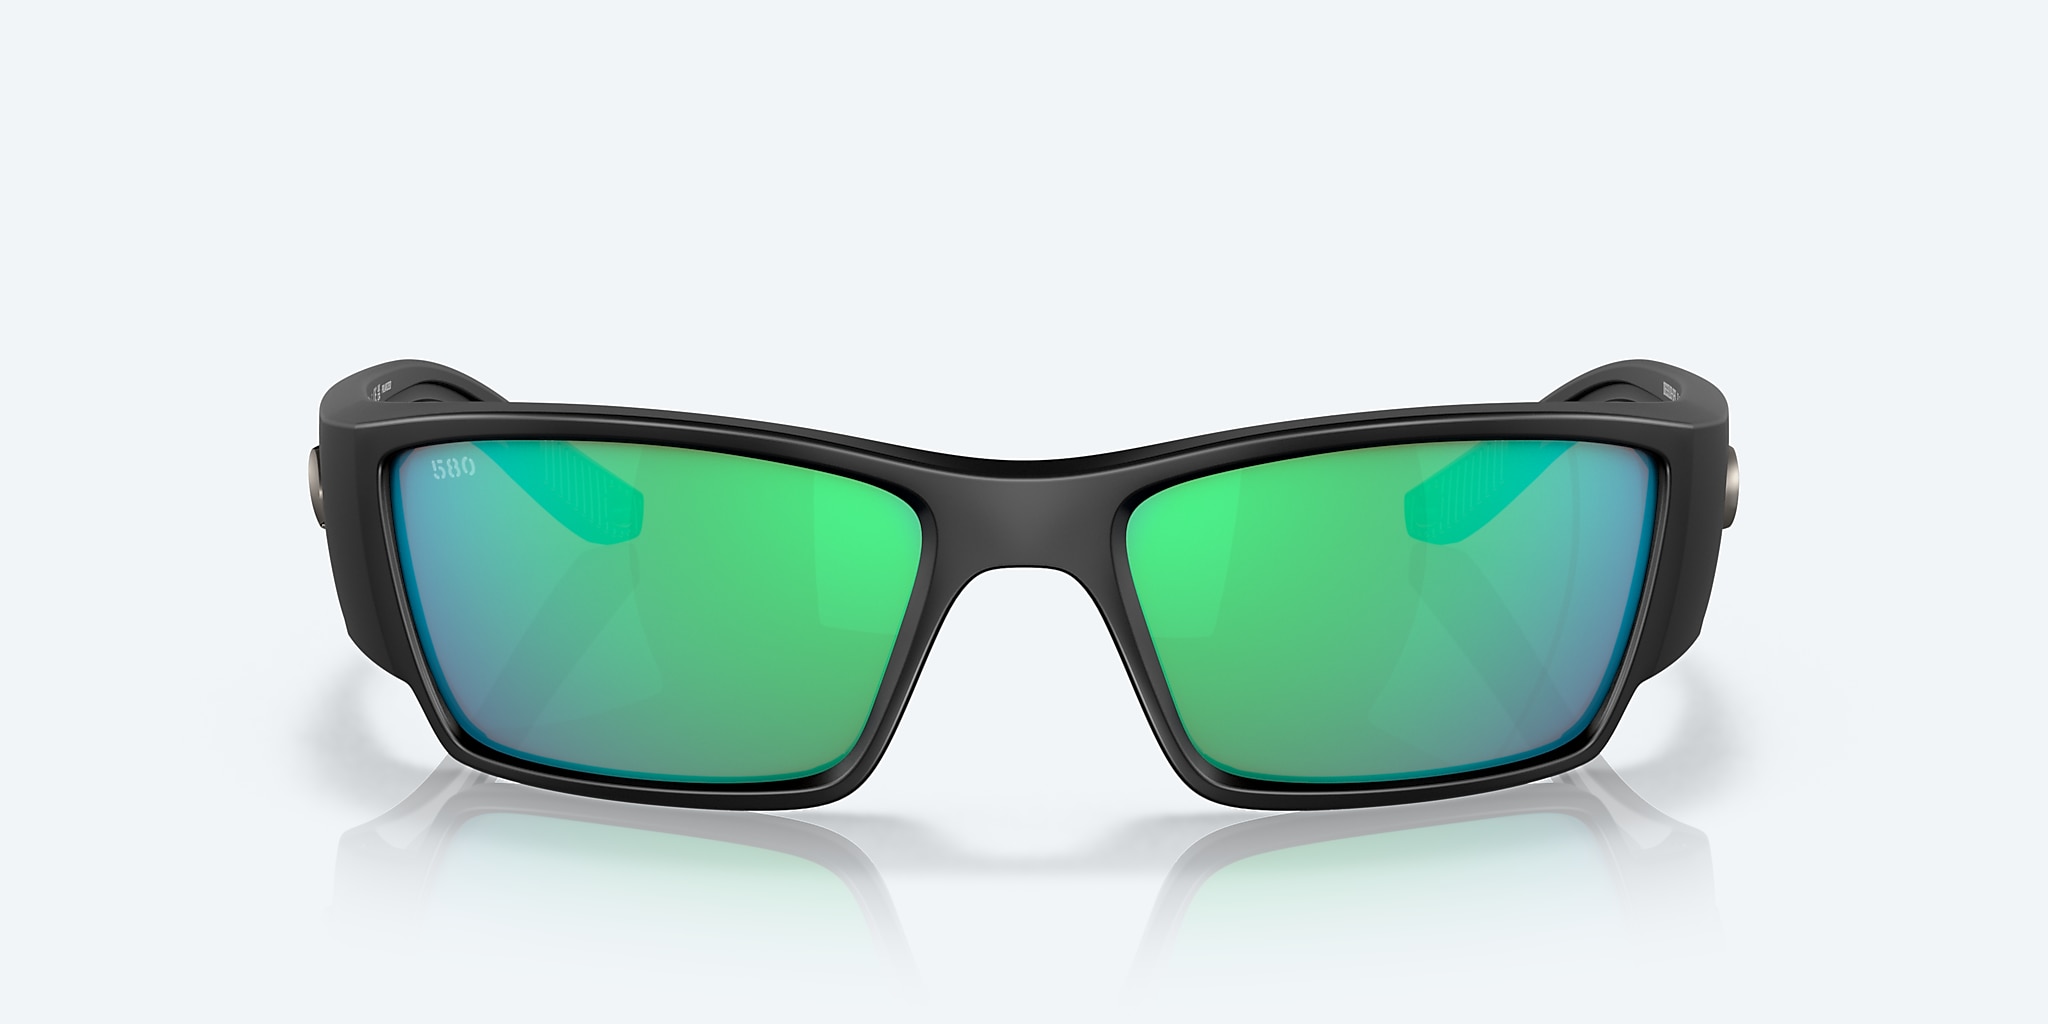 Corbina PRO Polarized Sunglasses in Green Mirror | Costa Del Mar®